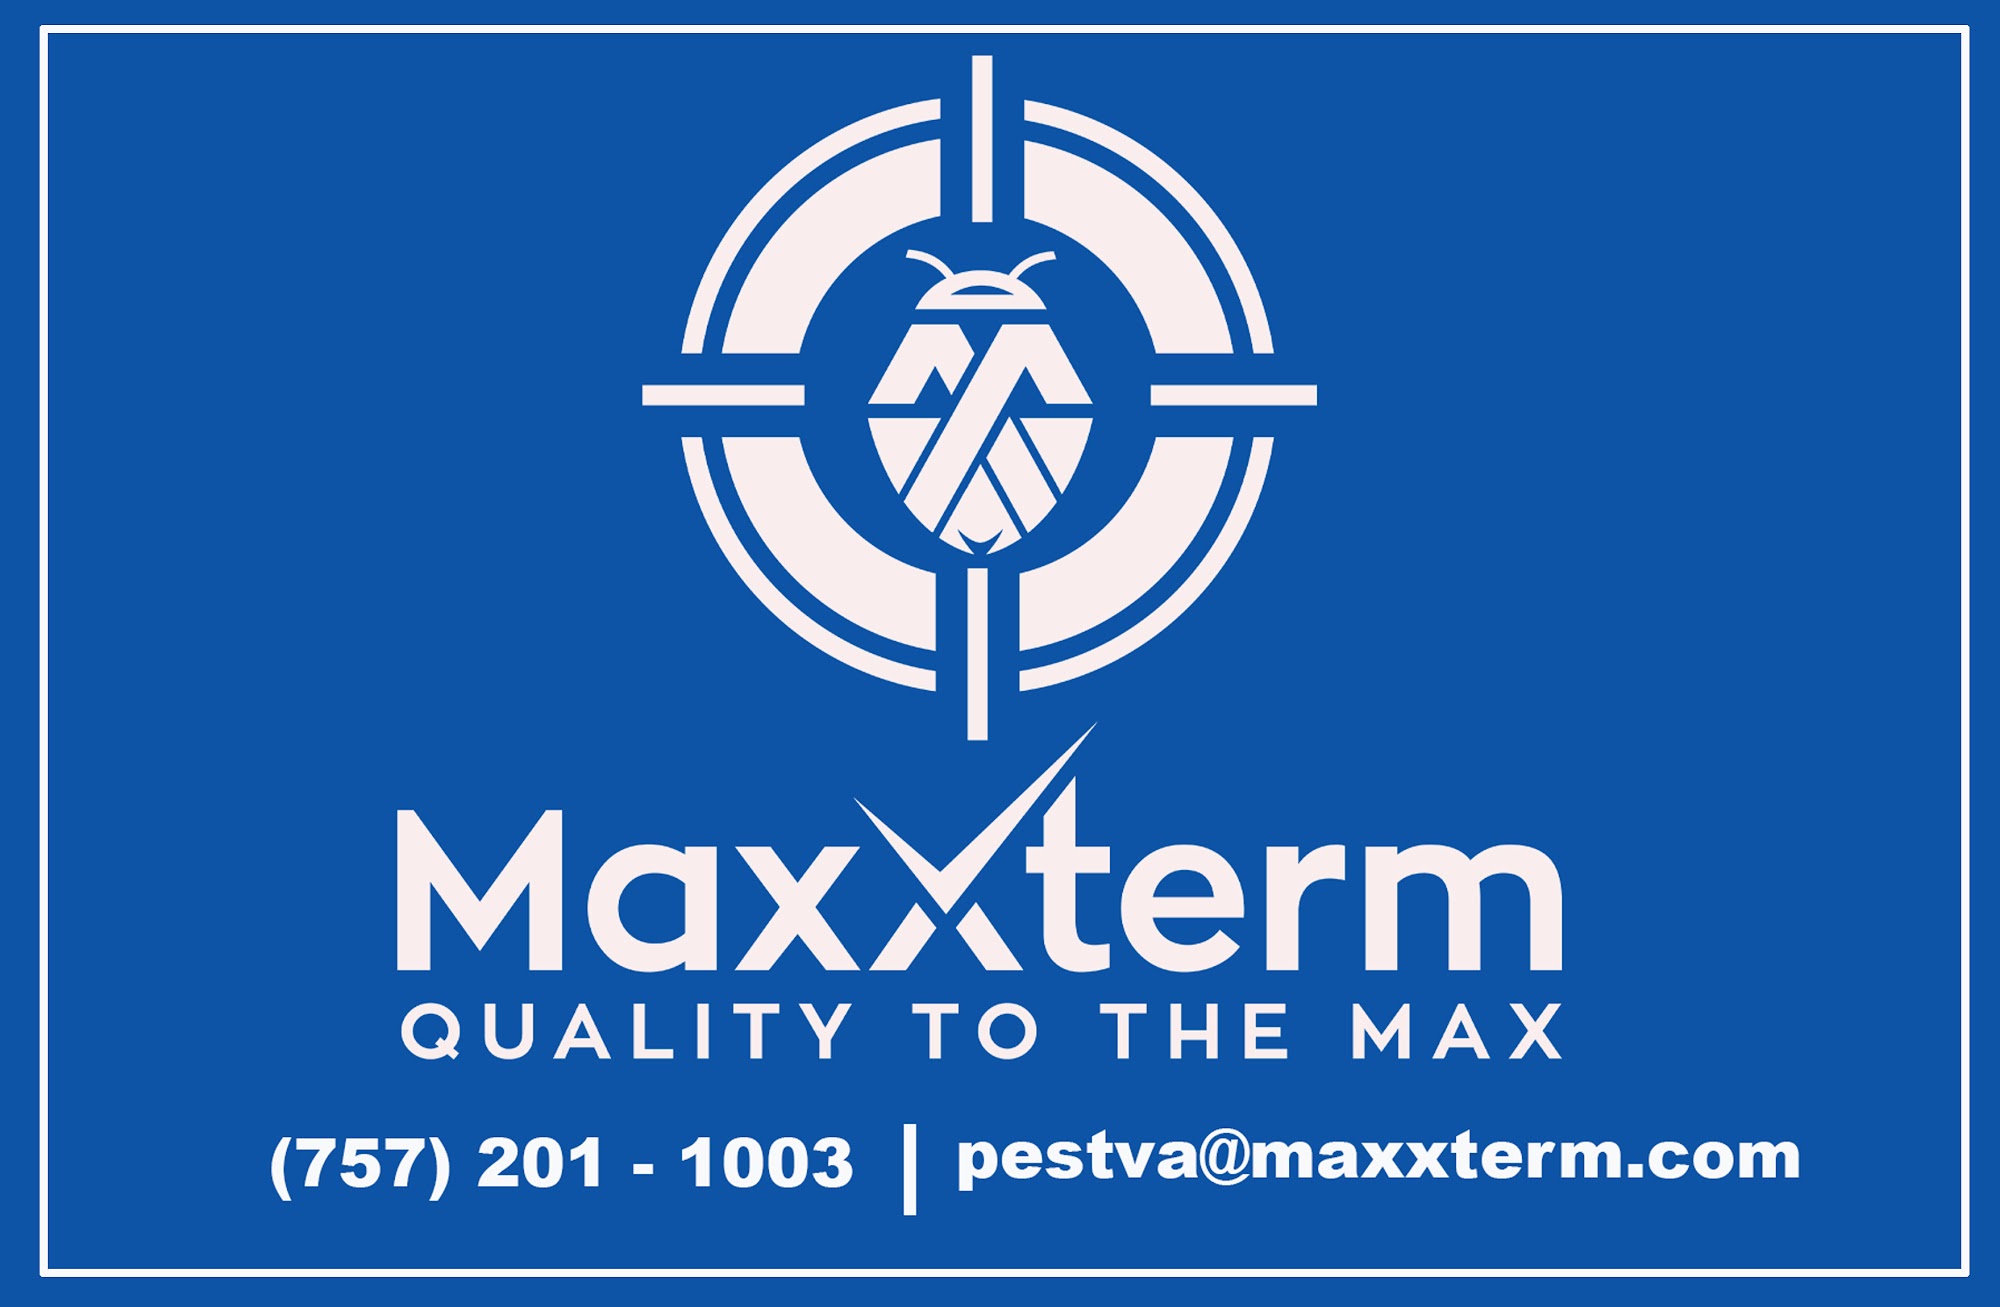 MaxXterm LLC